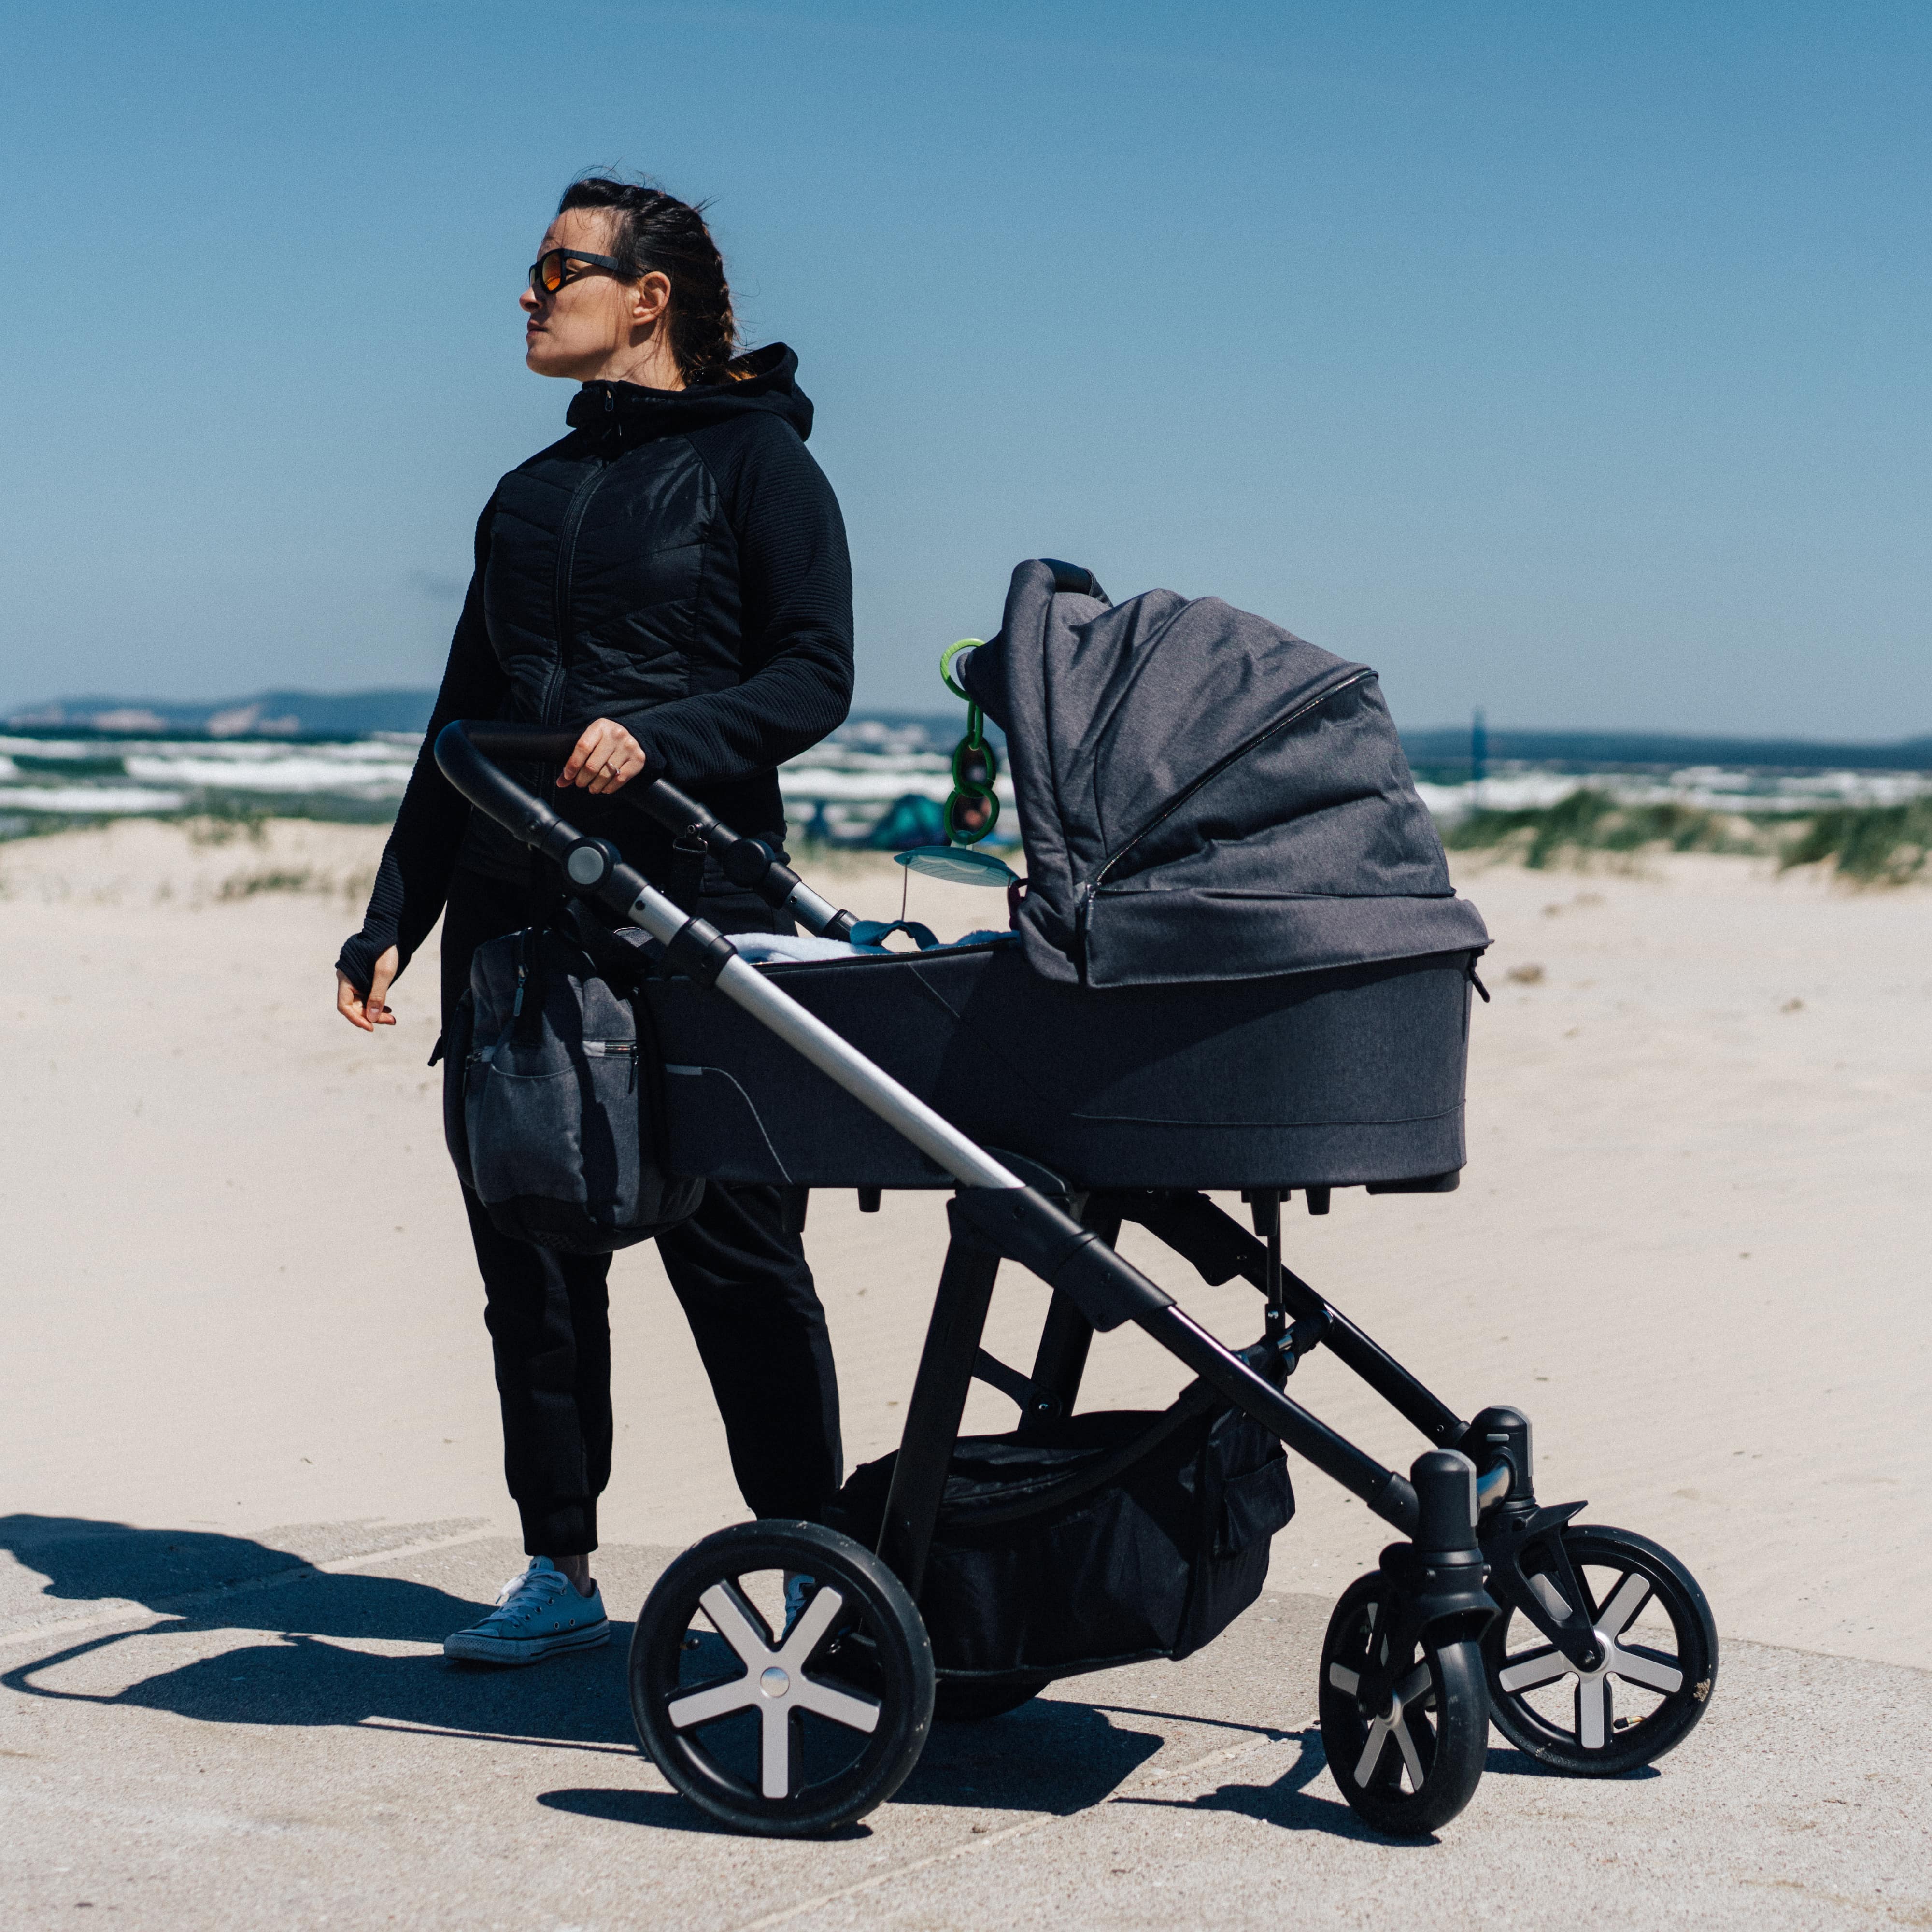 Mutter in schwarzer Kleidung mit Kinderwagen am Strand.